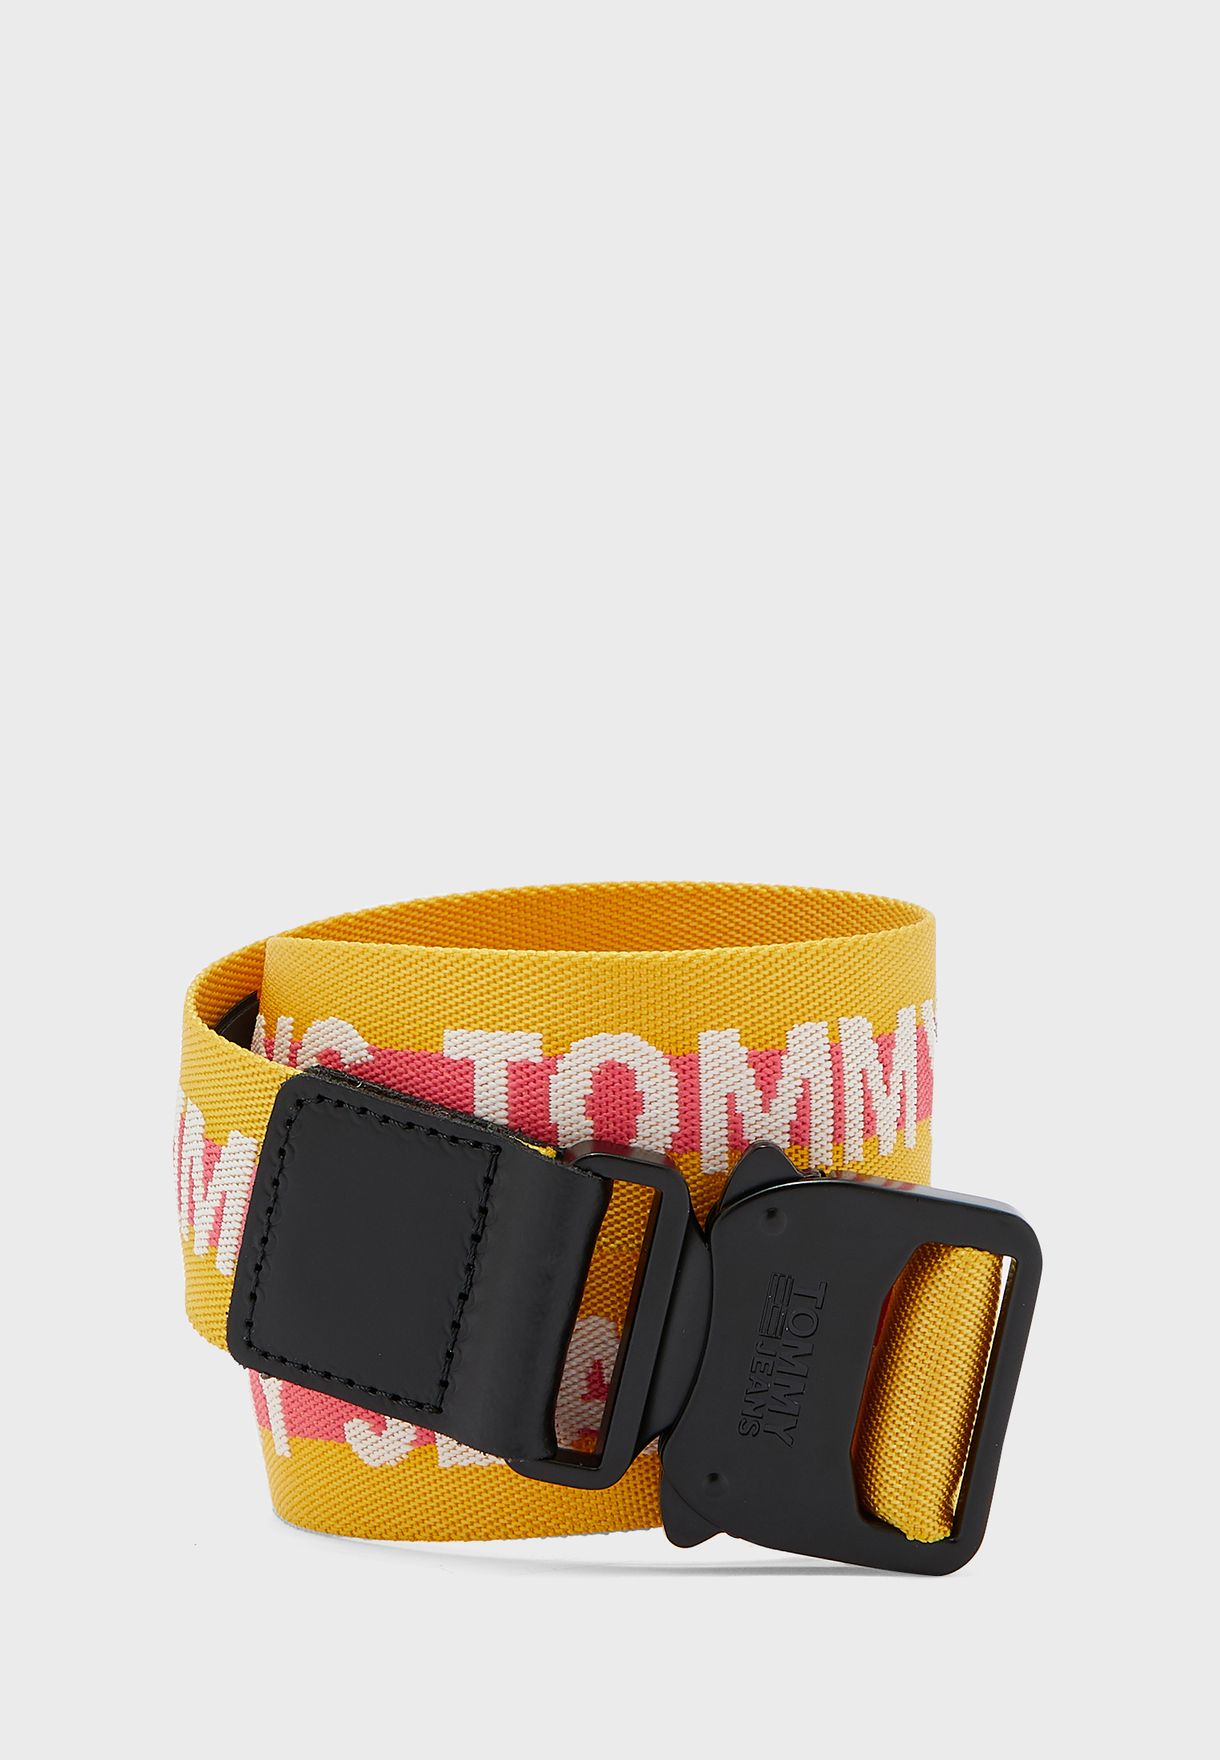 tommy jeans webbing belt yellow